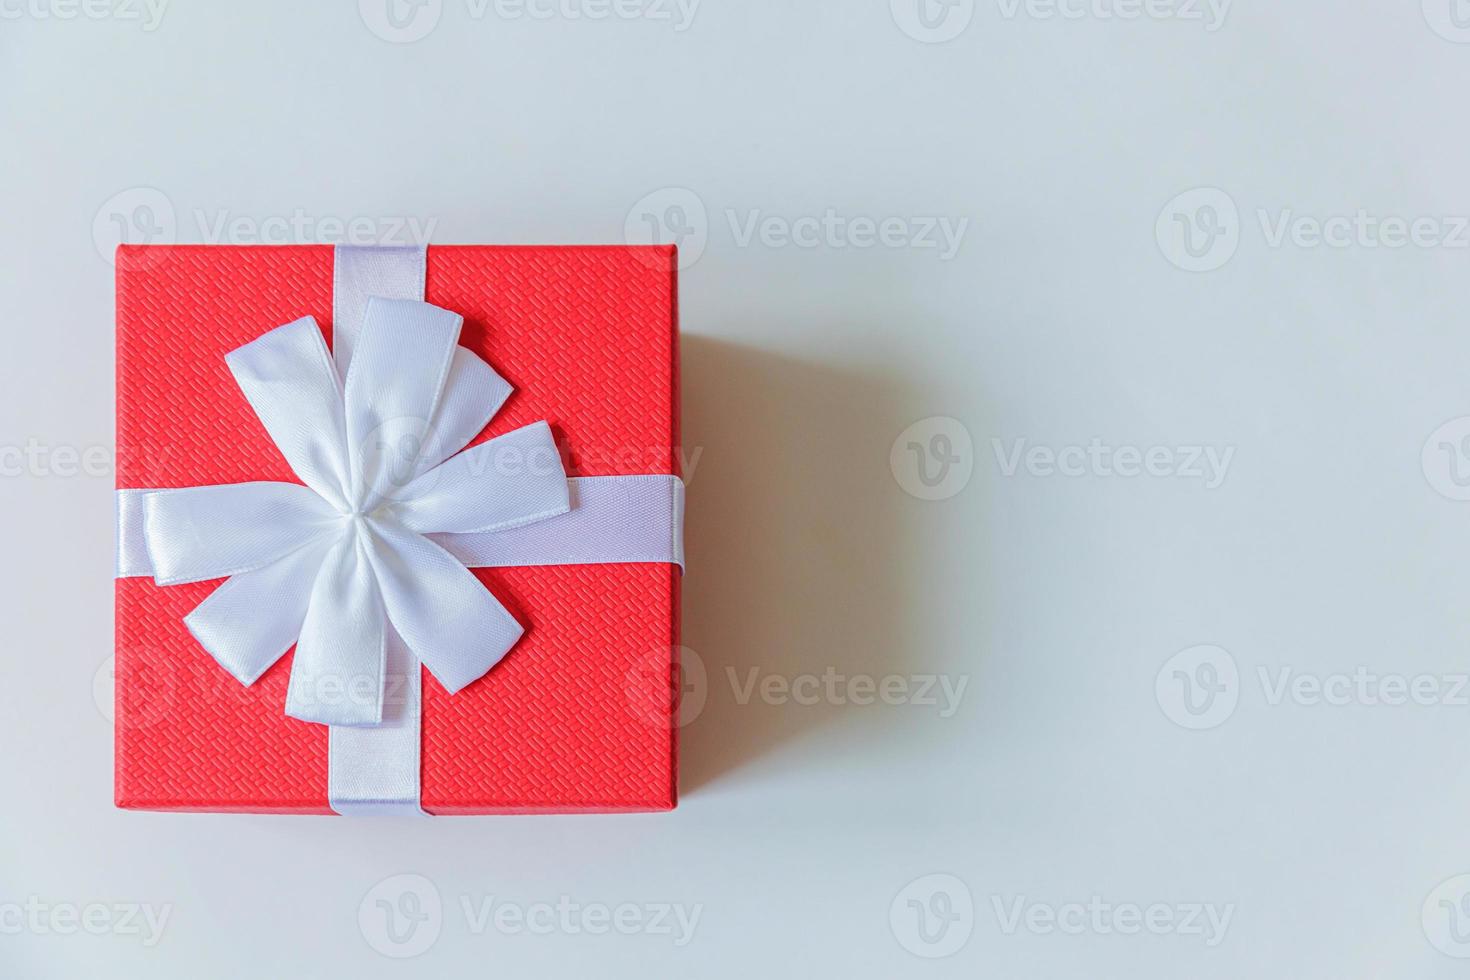 navidad año nuevo cumpleaños san valentín celebración presente concepto romántico. caja de regalo roja de diseño simplemente minimalista aislada sobre fondo blanco. espacio de copia de vista superior plana. foto